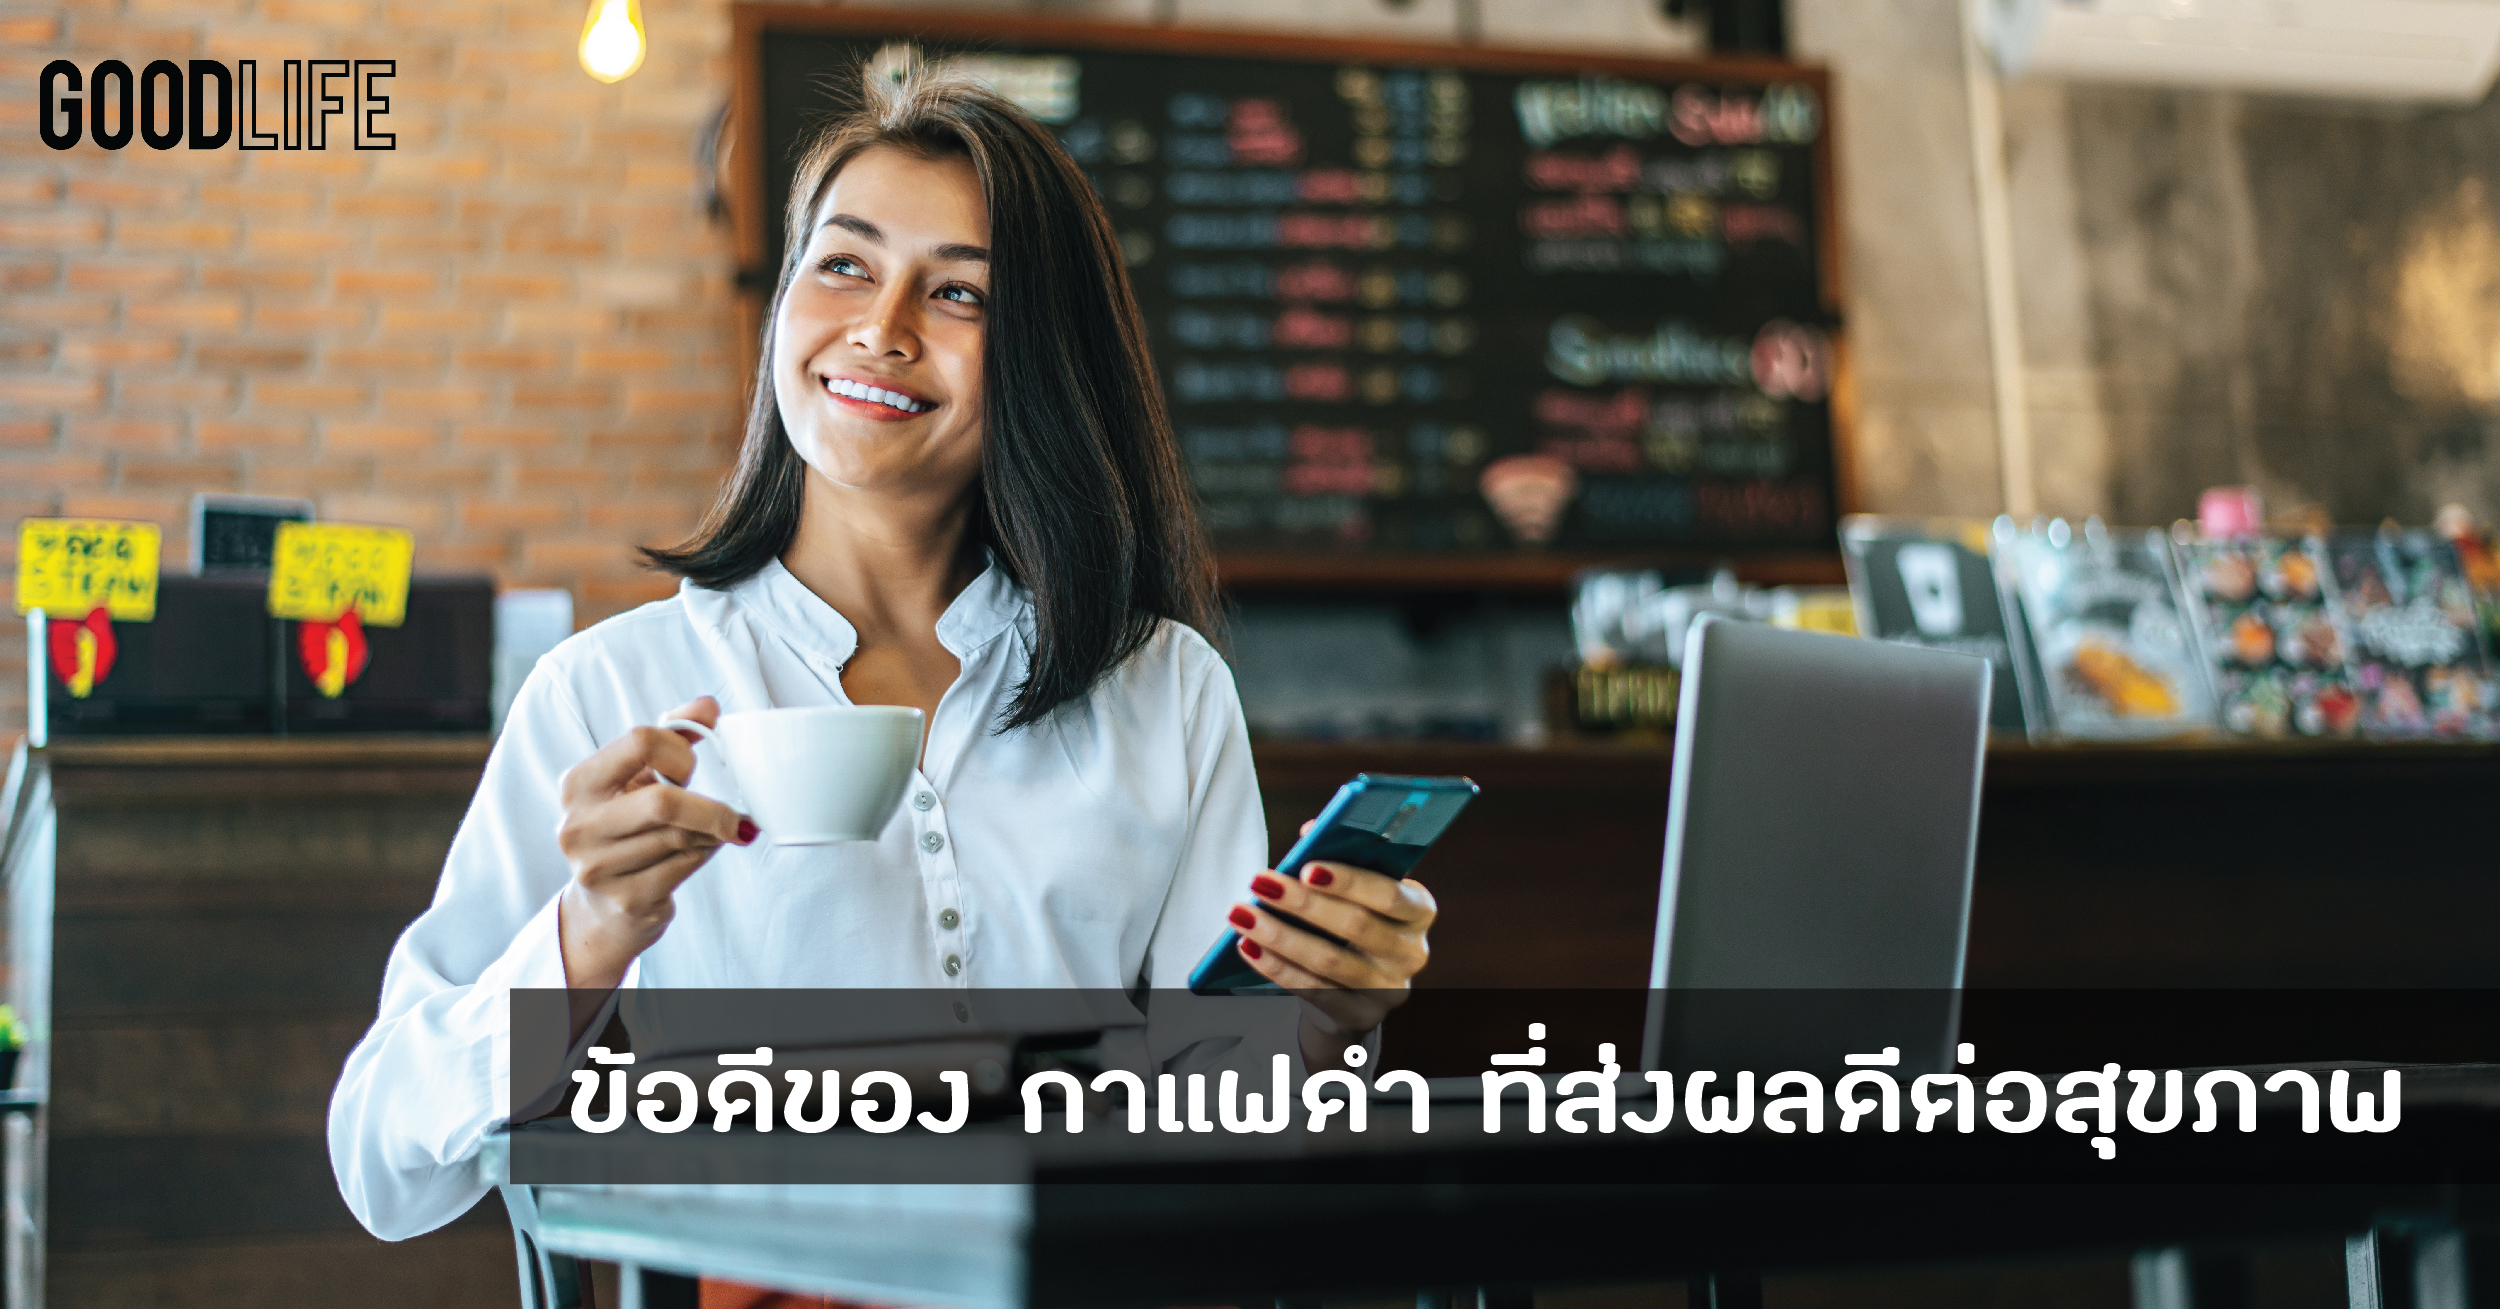 ข้อดีของ กาแฟดำ ที่ส่งผลดีต่อสุขภาพ หนึ่งทางเลือกของคนชอบดื่มกาแฟ